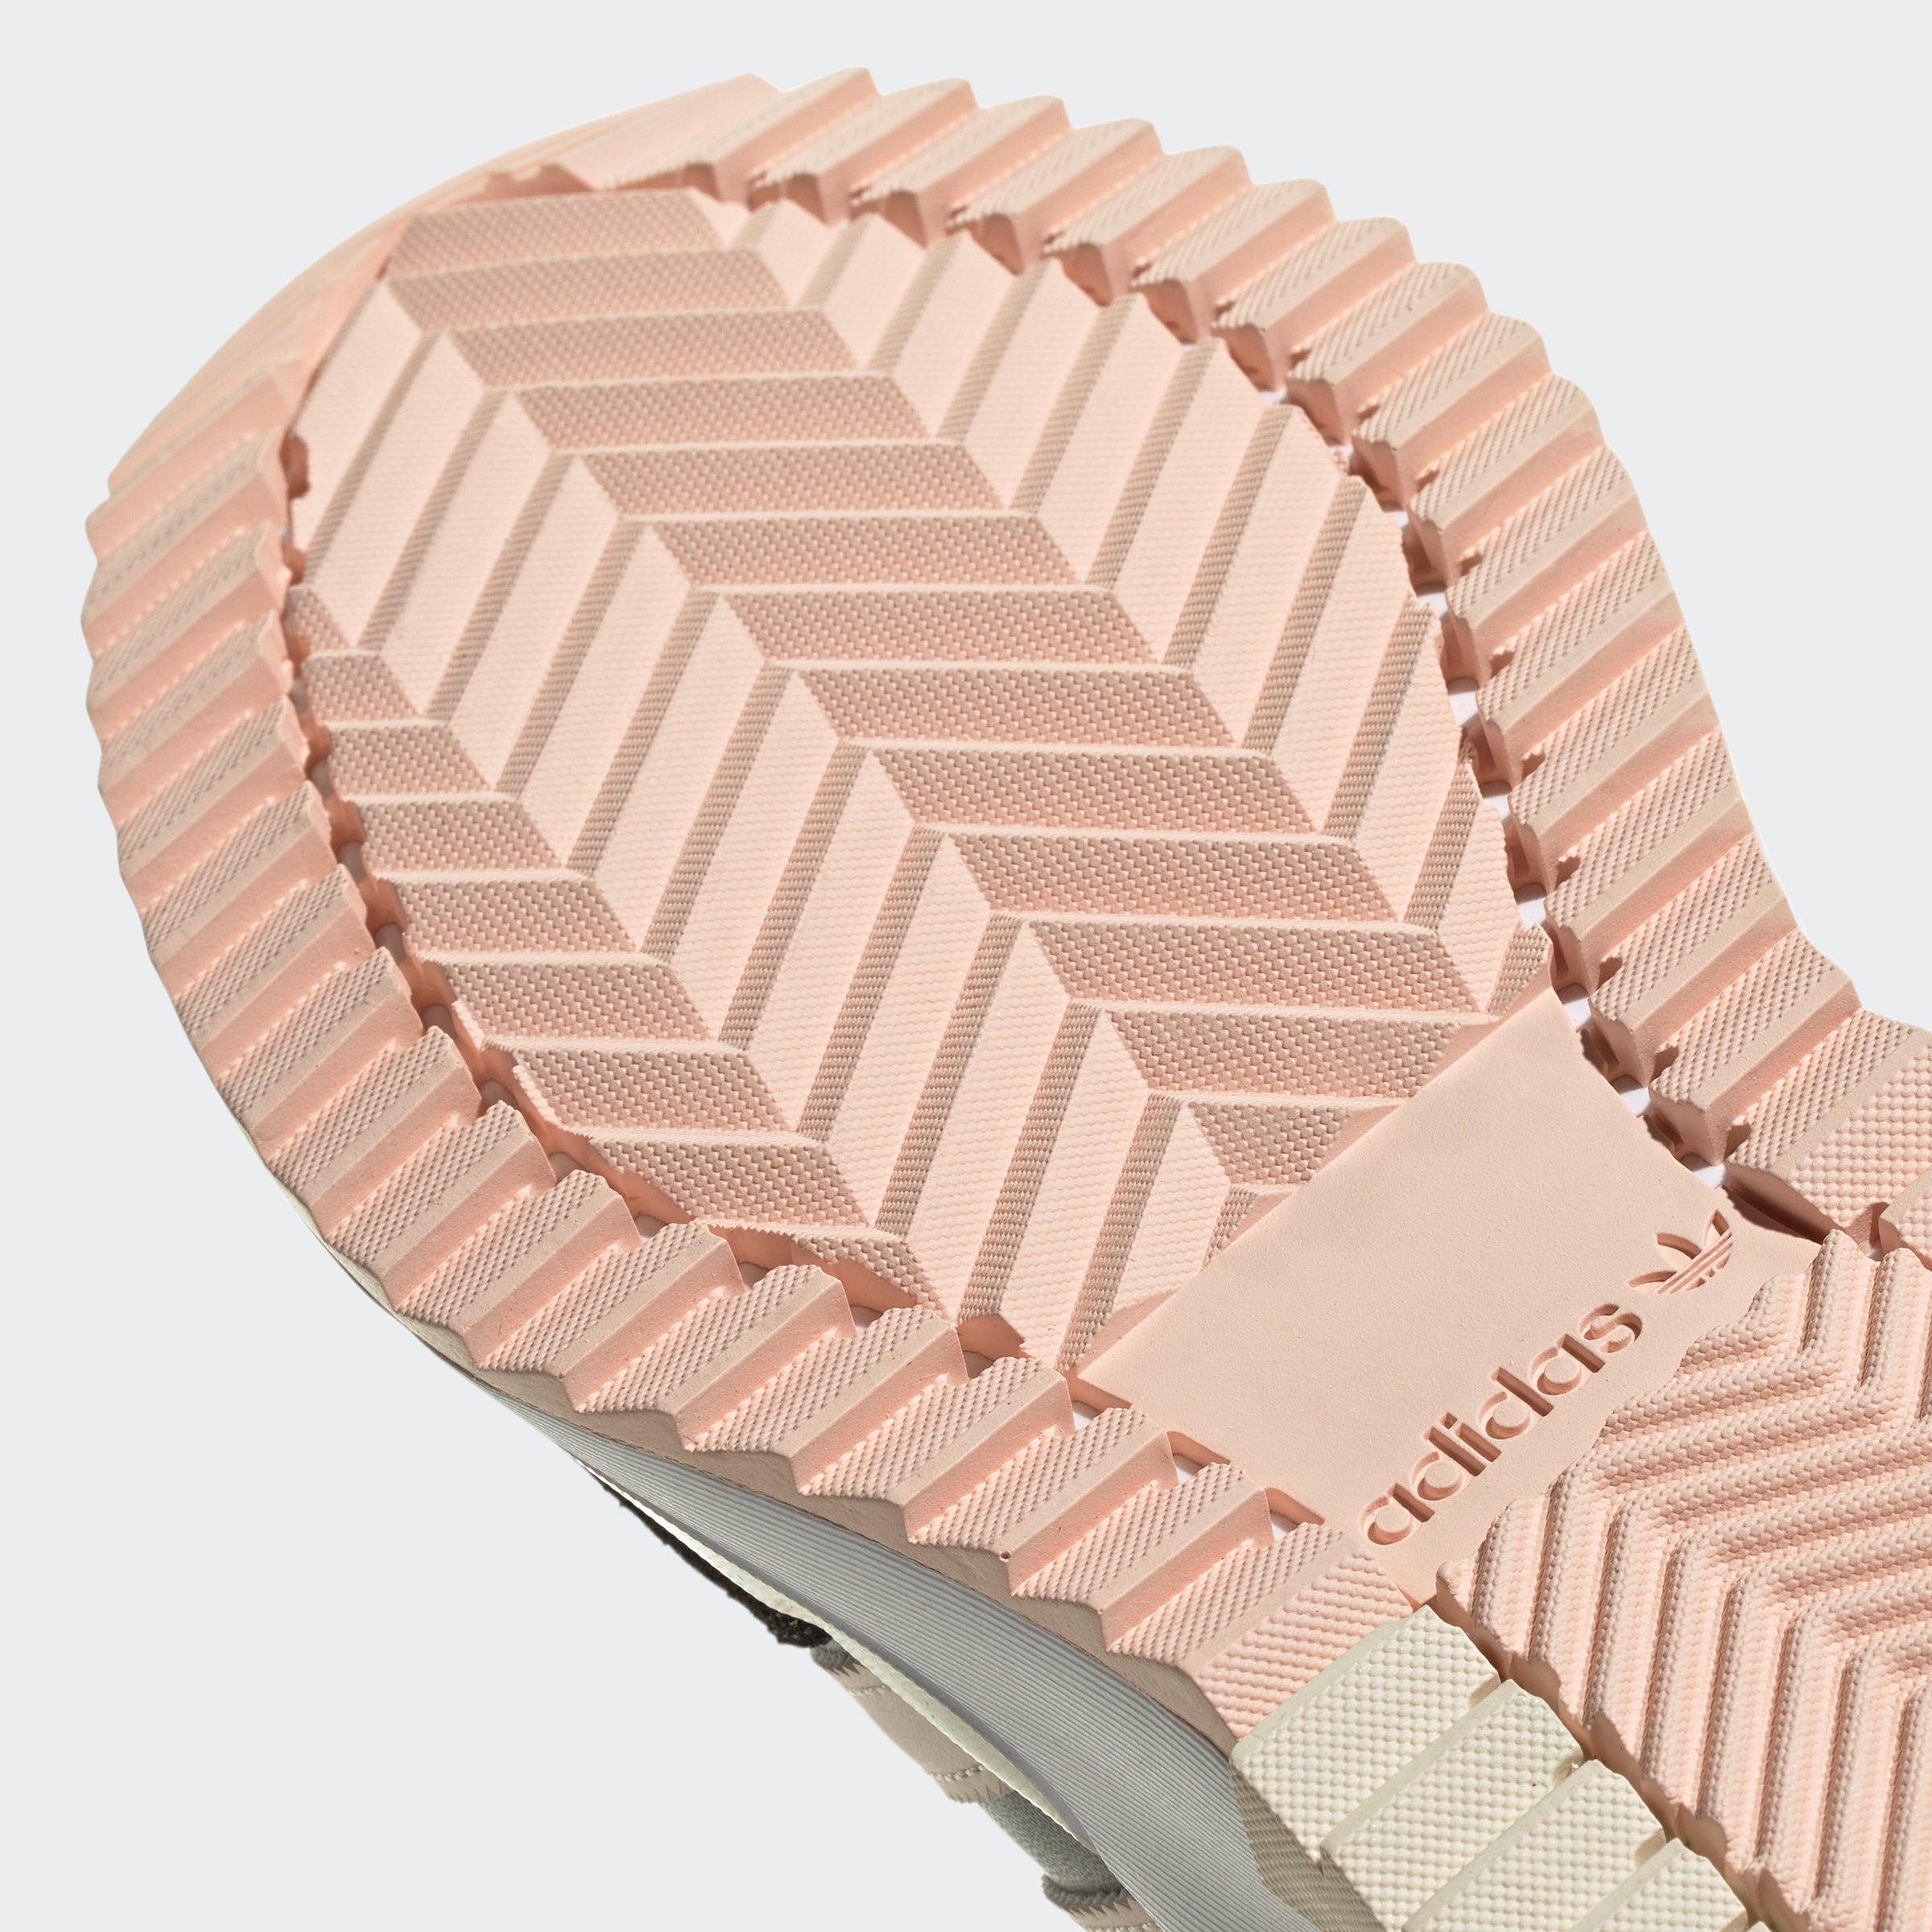 adidas Originals RETROPY F2 Sneaker / Quartz Carbon / Grey Five Wonder